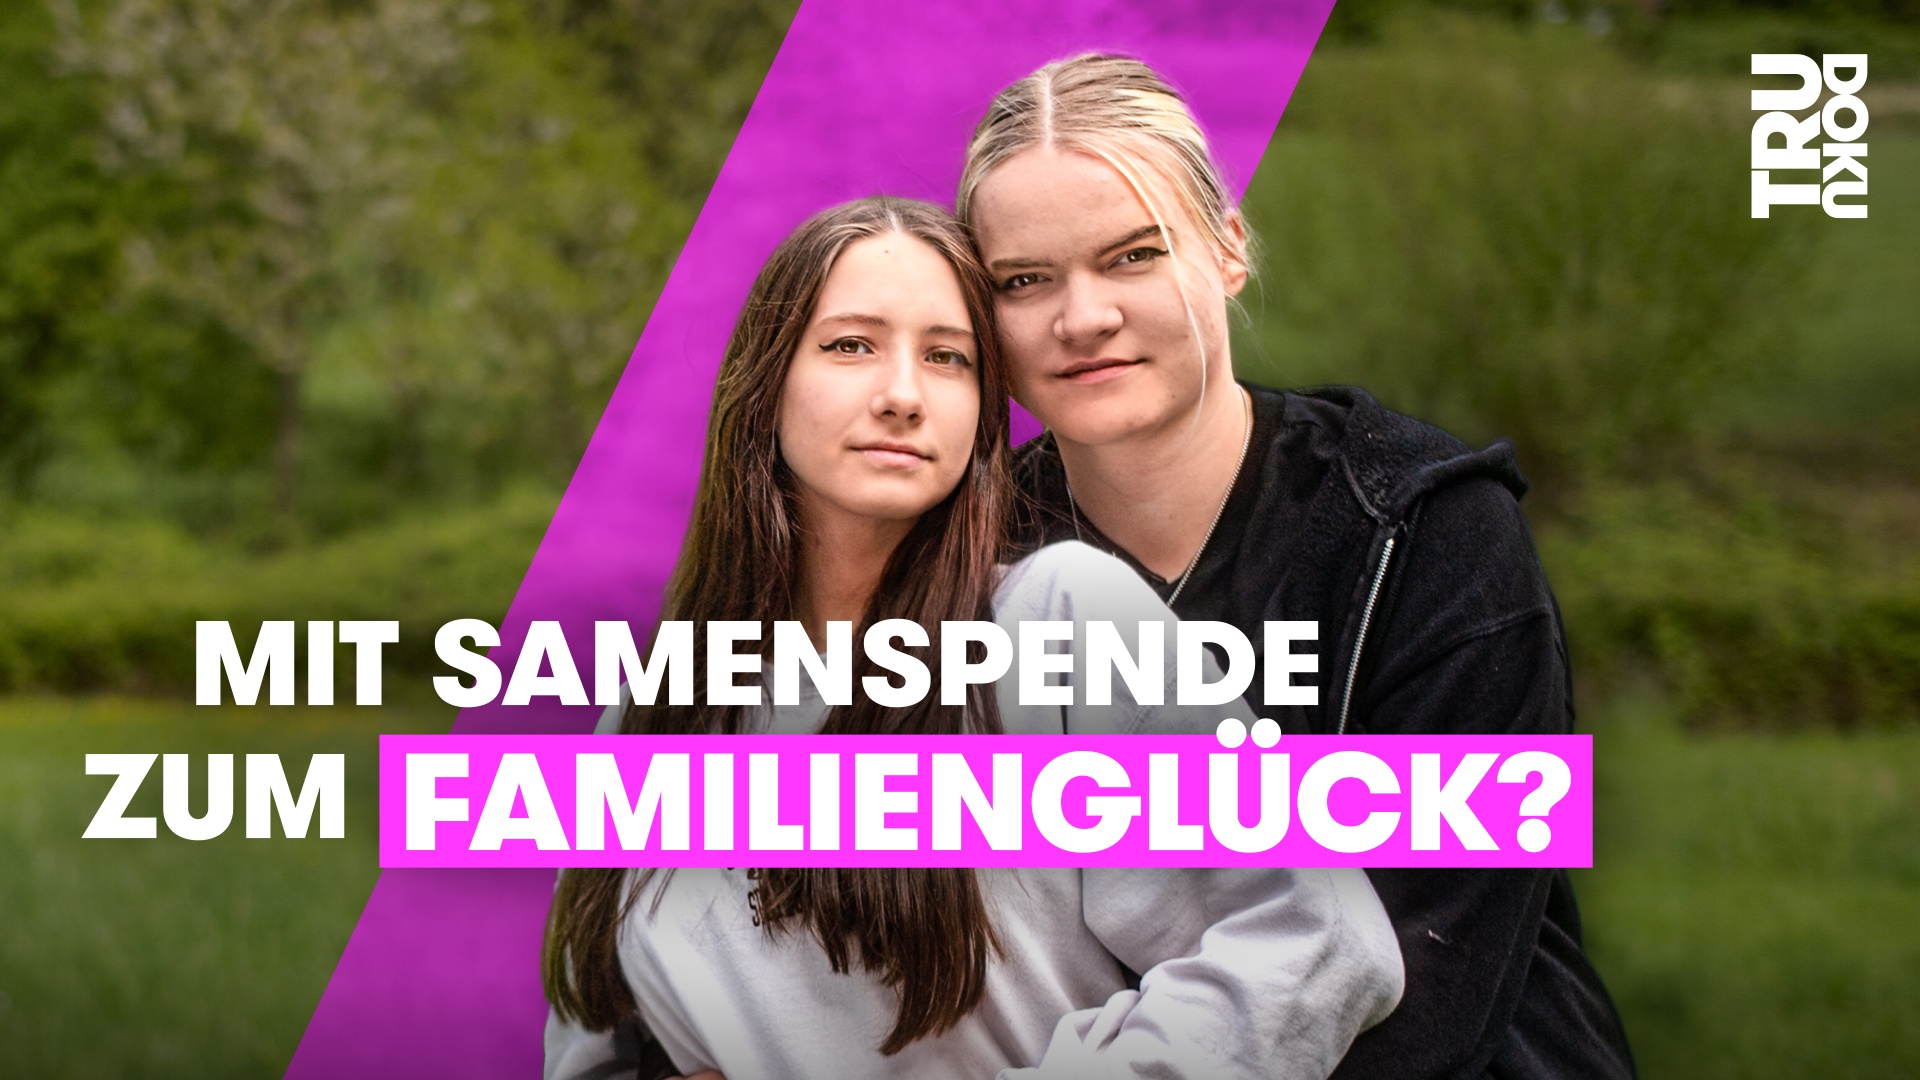 Finnja (21) und Jill (22): Wir werden Mamas! - TRU DOKU